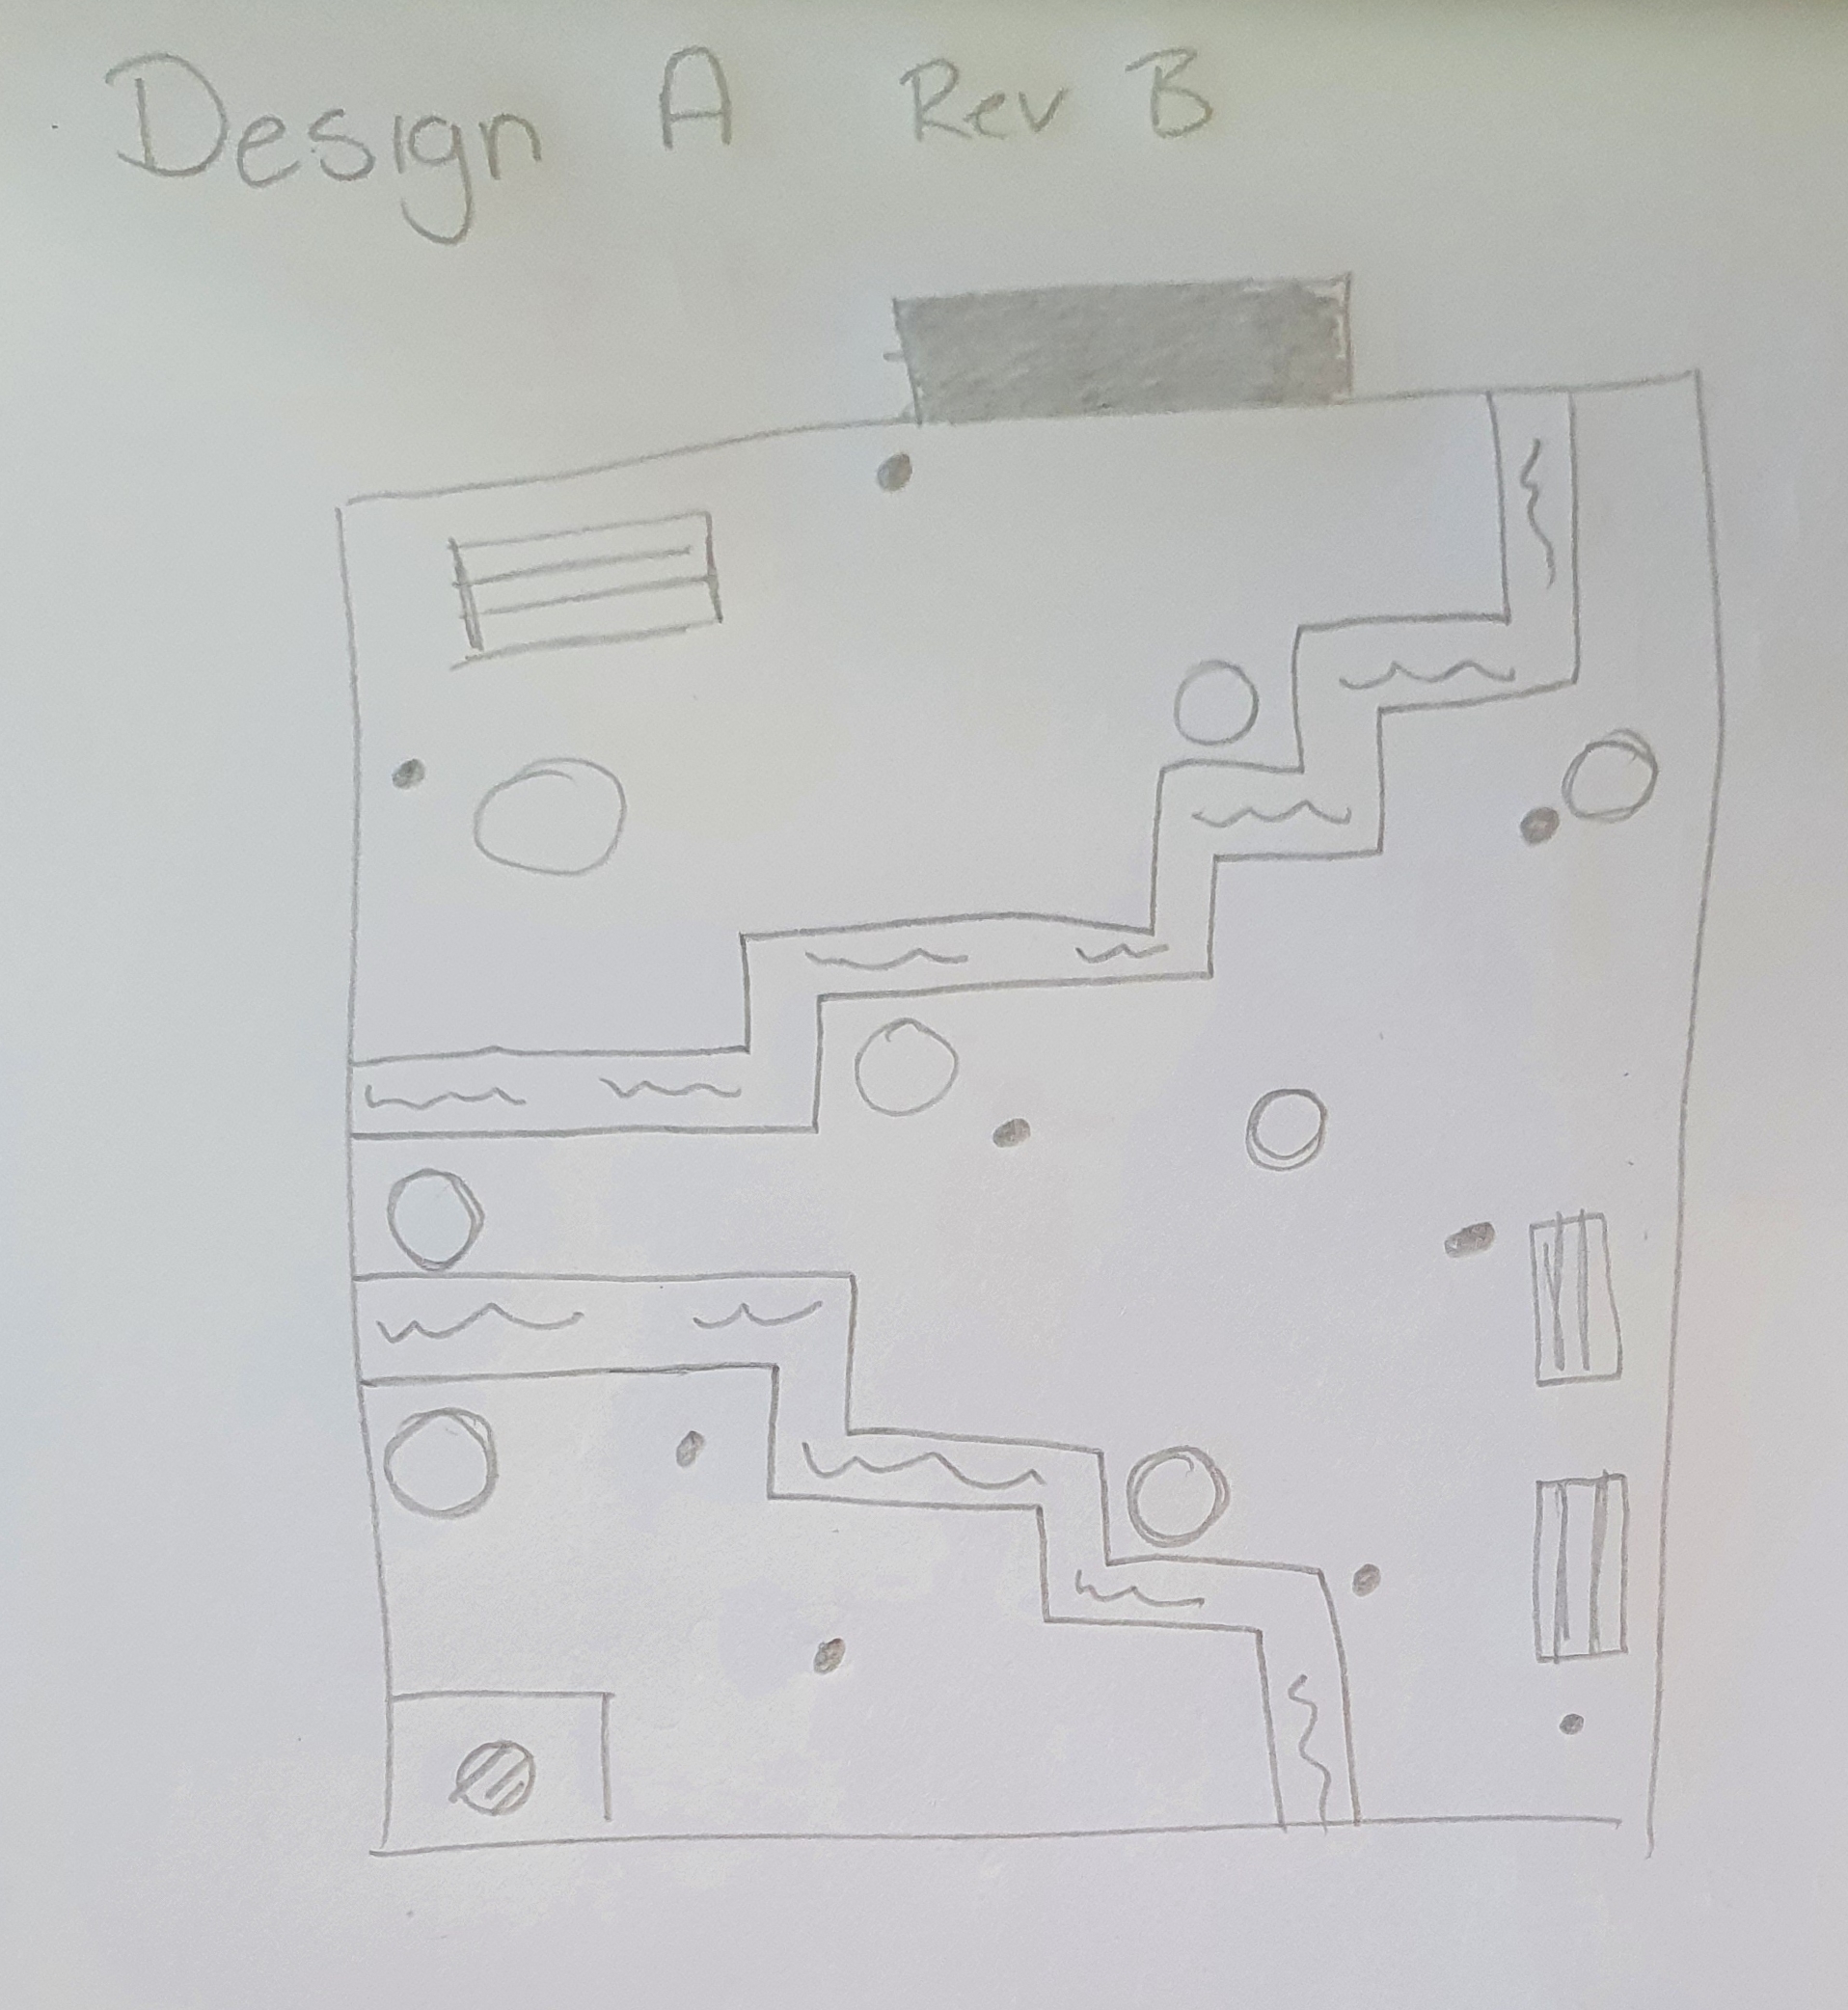 final level design sketch